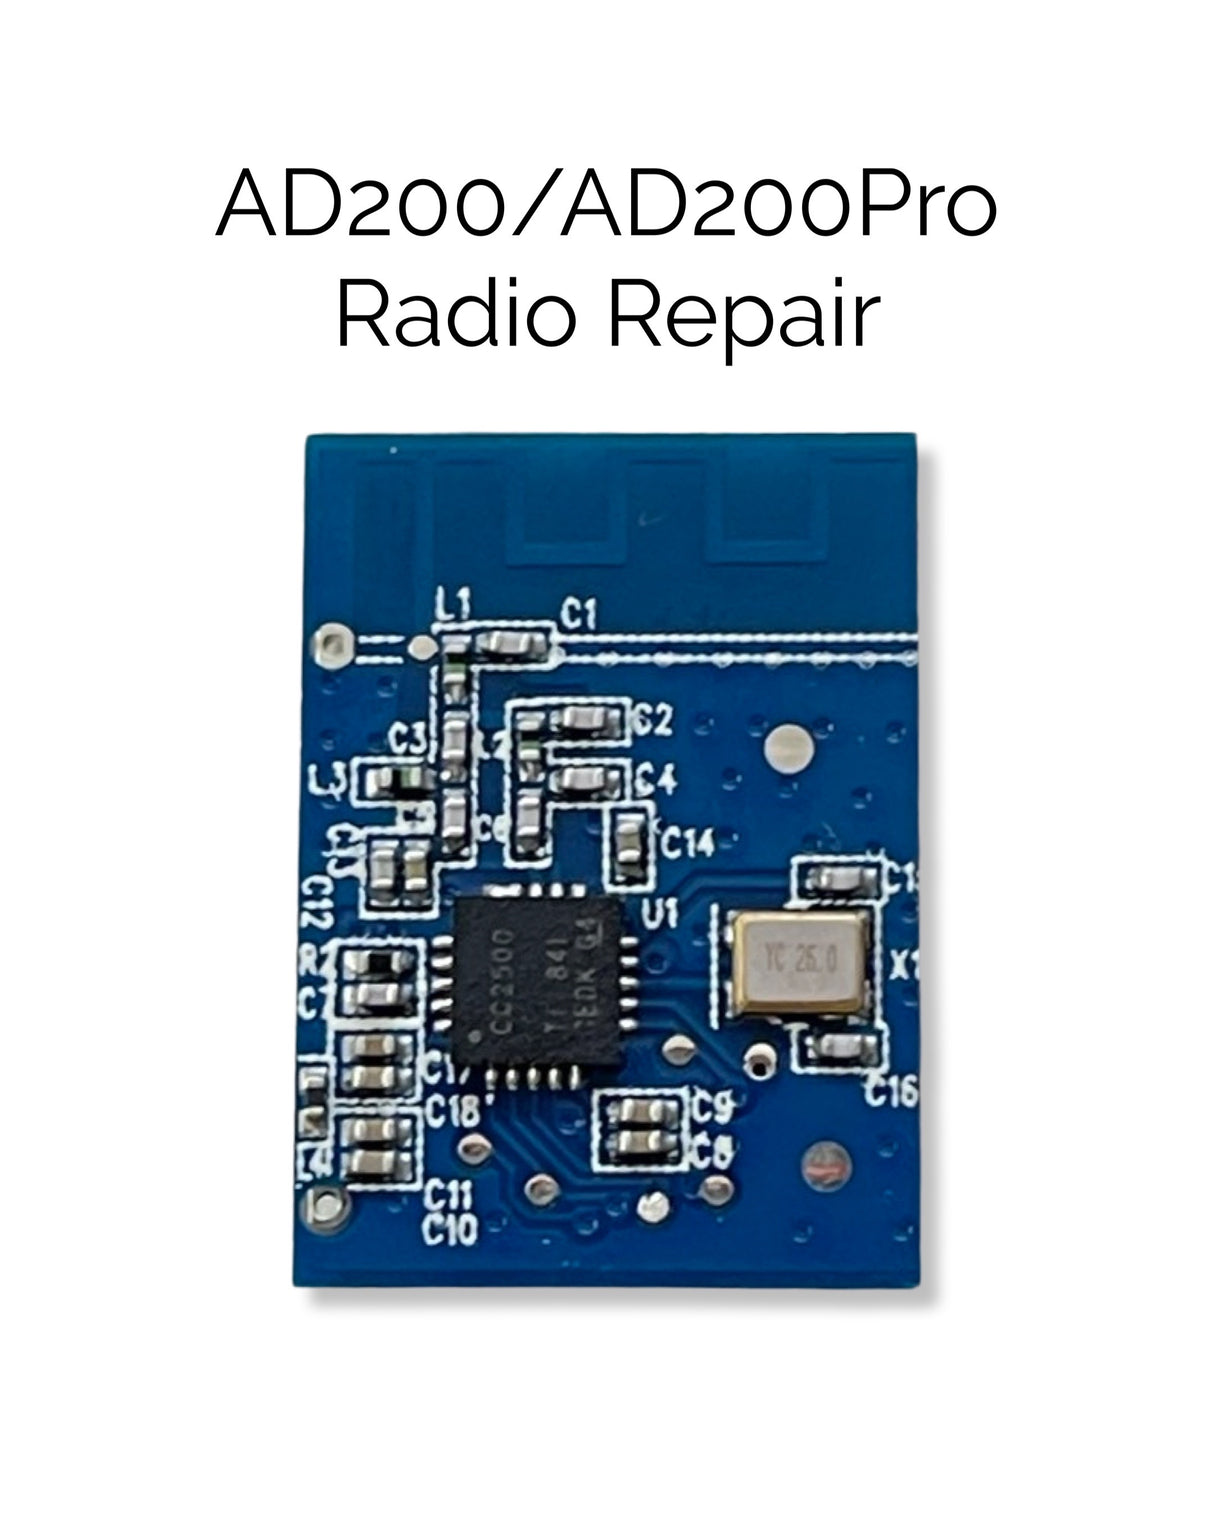 AD200/AD200Pro Radio Receiver Repair/Replacement